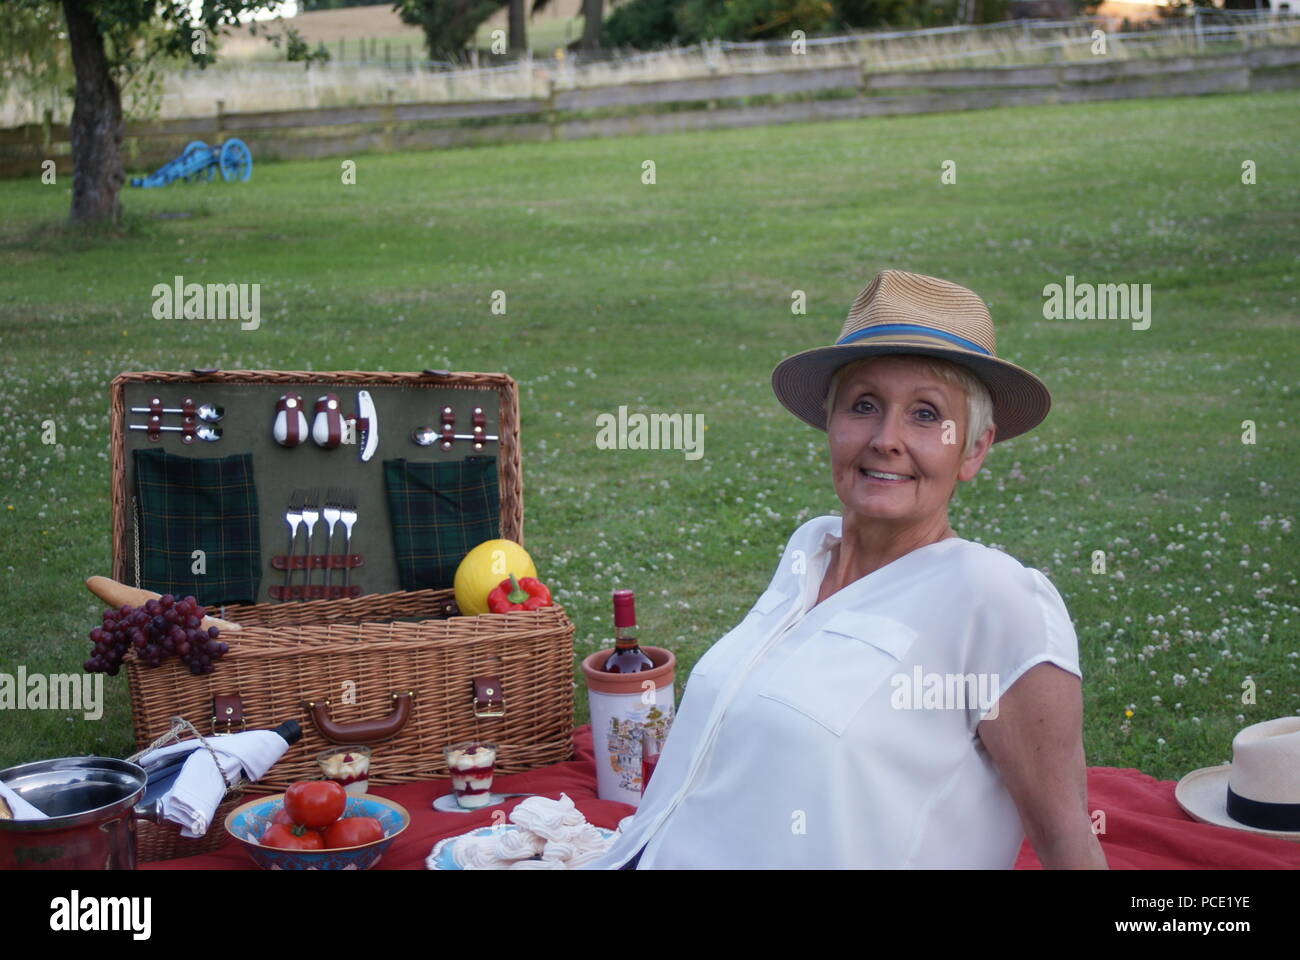 Rilassati con un cappello per il sole sulla sua testa, la donna bionda sorride al picnic Foto Stock